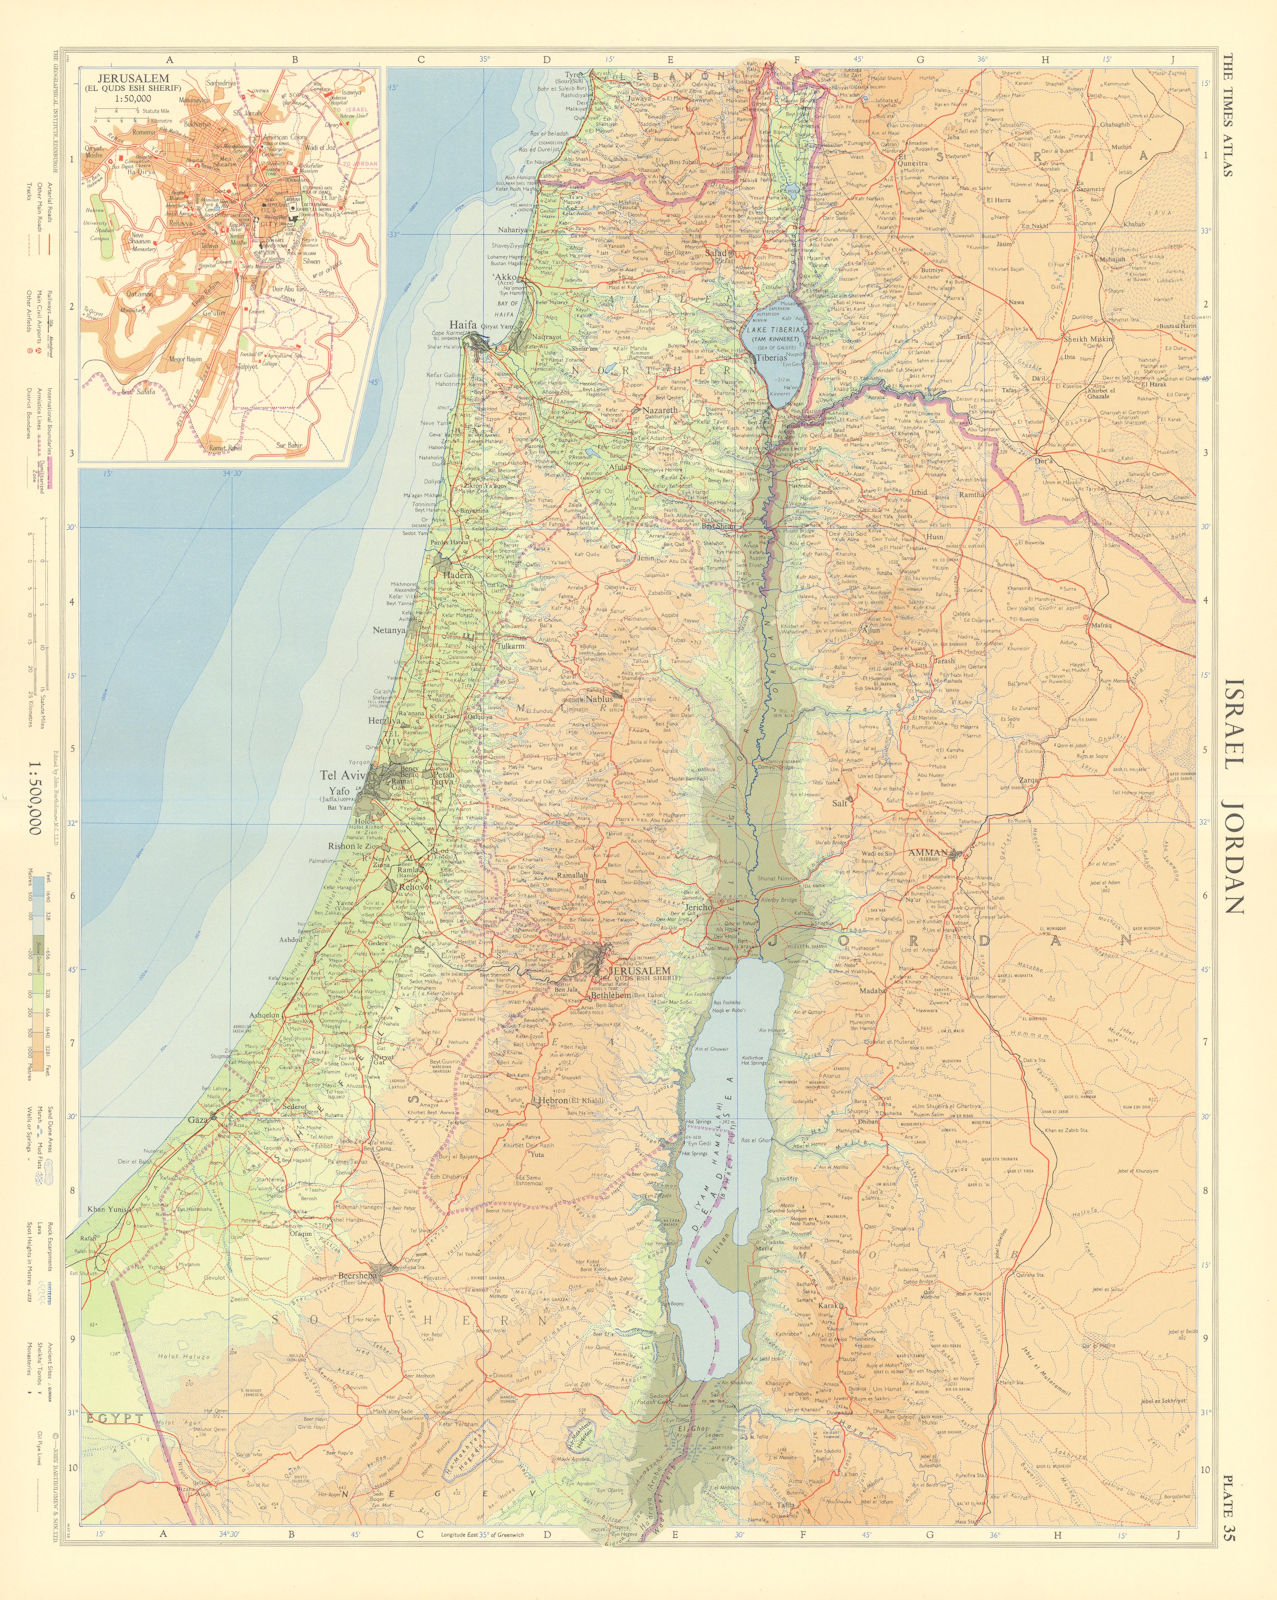 Israel & Jordan. West Bank armistice line. Jerusalem plan. TIMES 1959 old map